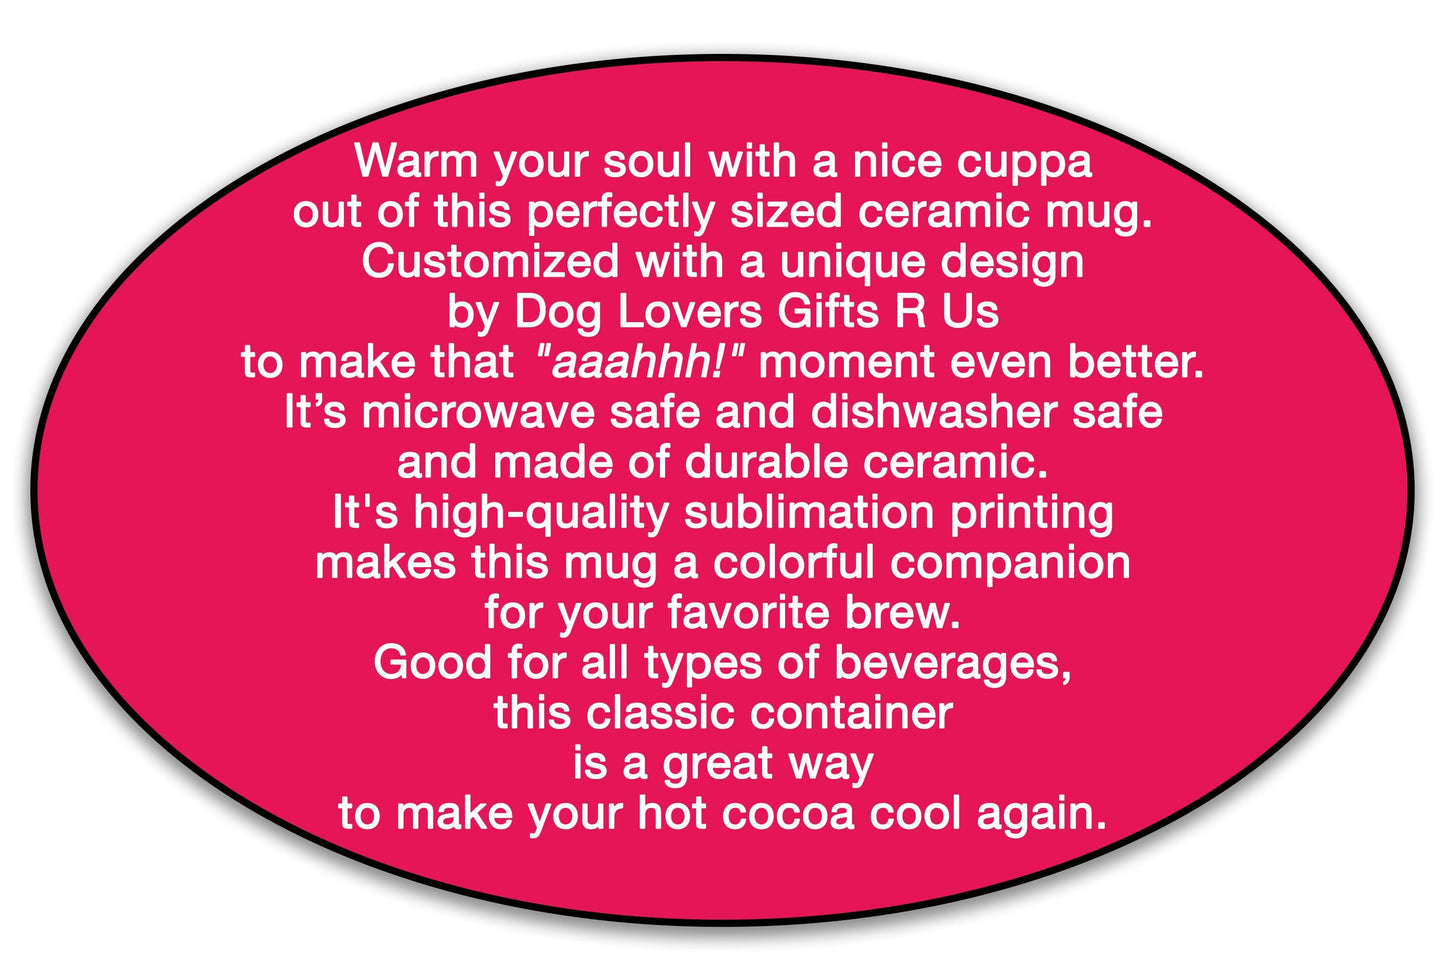 Cane Corso Kisses Dog Coffee Mug, Cane Corso Mom Mug Valentine Gift, Dog Lover Birthday Mug, Dog Dad Mug Fathers Day Gift, Mothers Day Gift